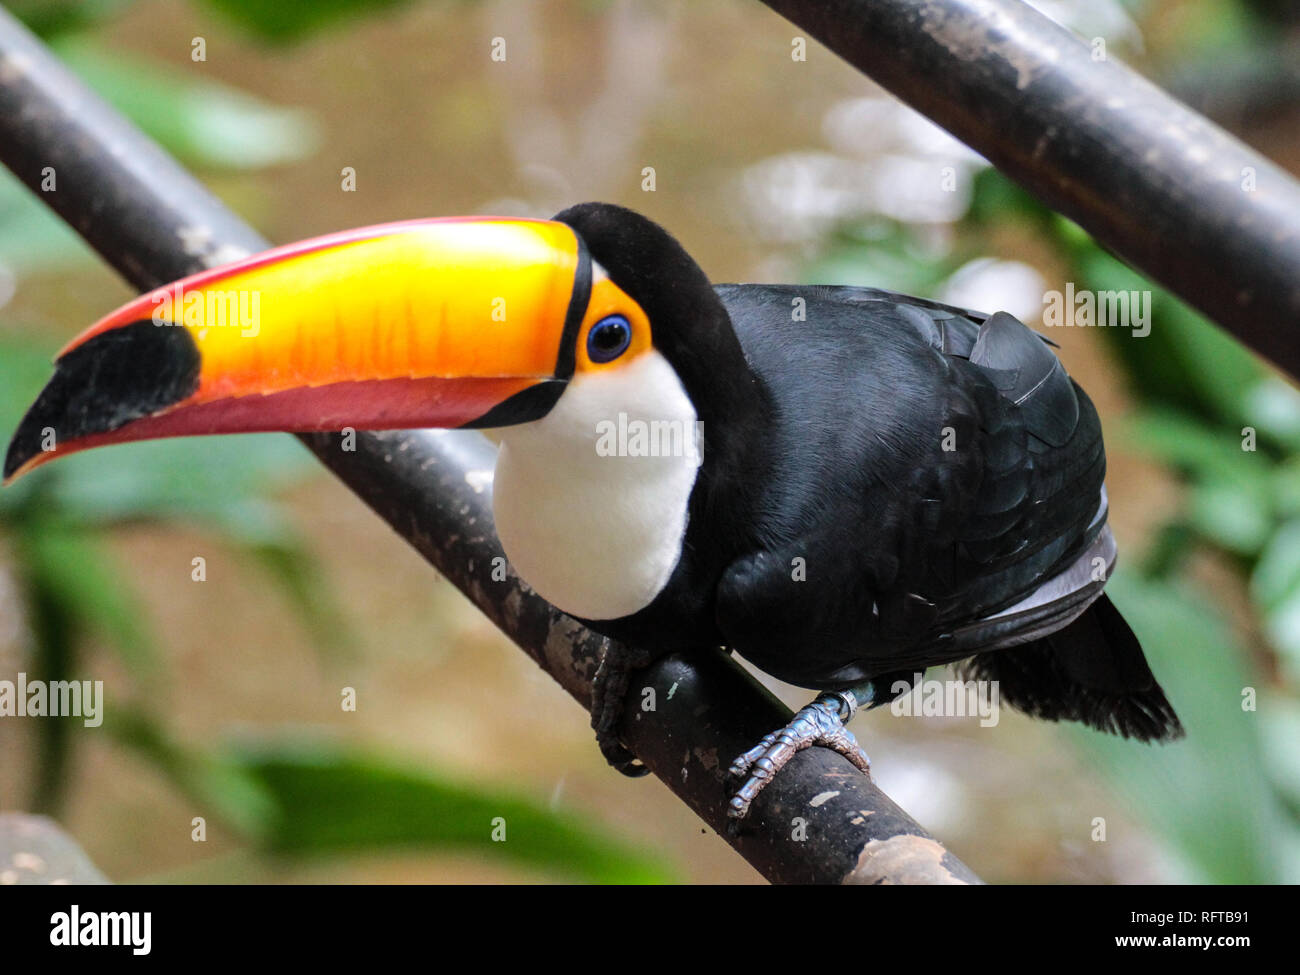 Tukan, einer der schönsten tropischen Vögel Foto Stock